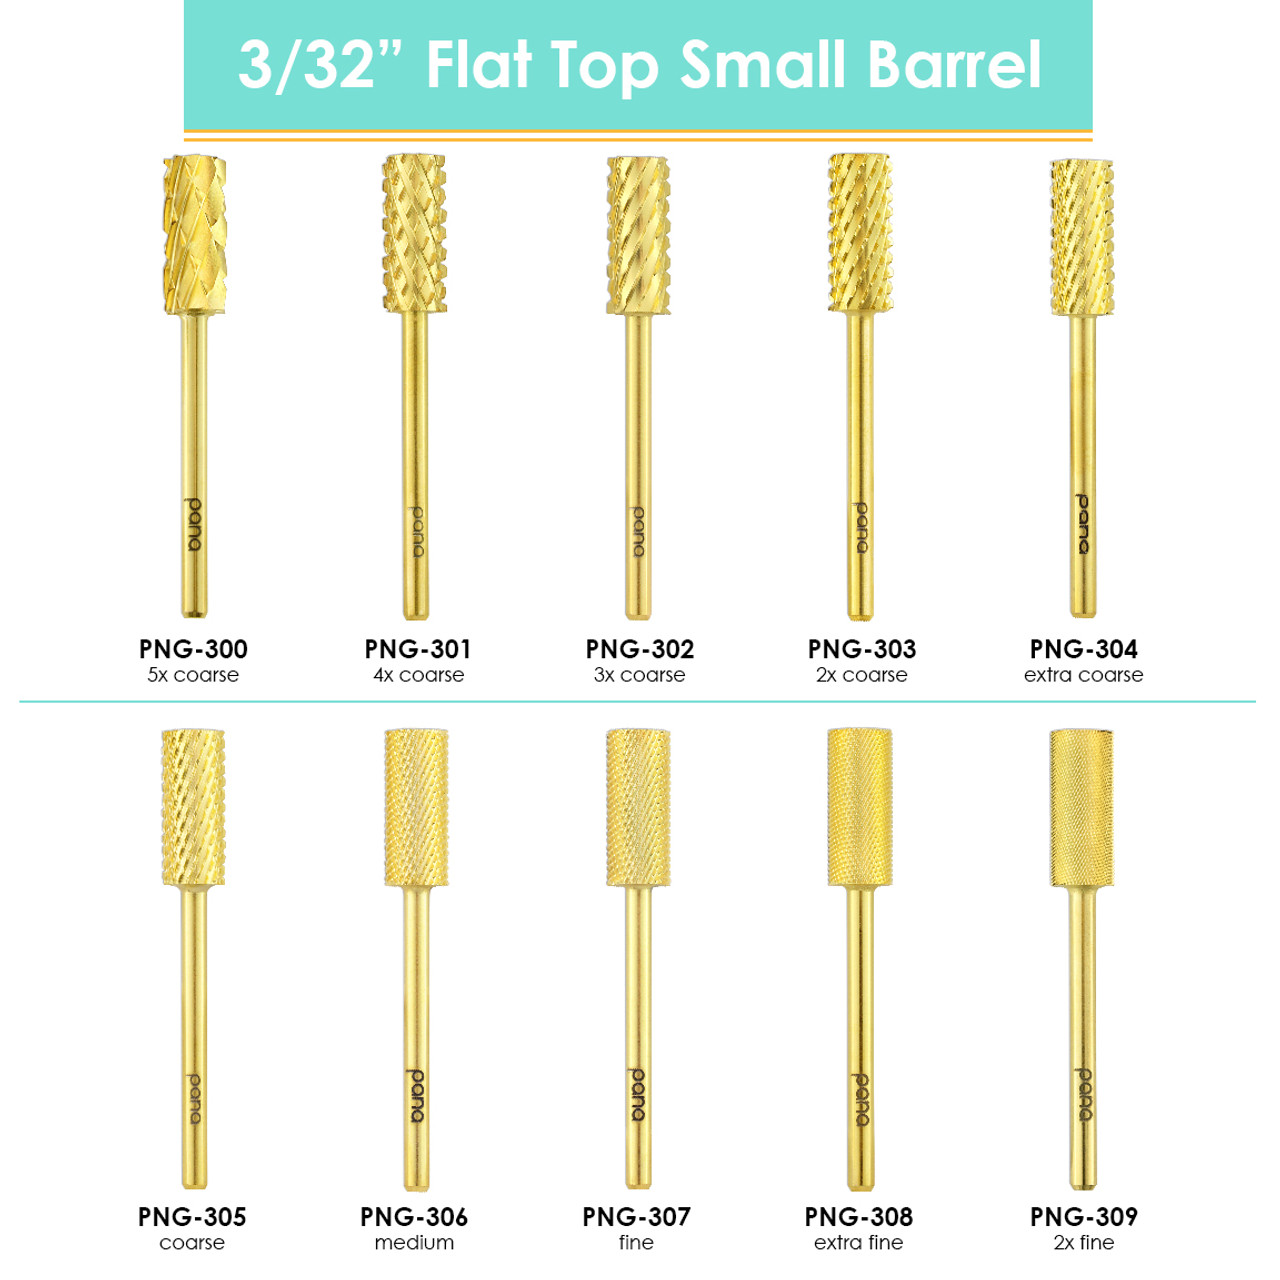 3/32" Flat Top Small Barrel Gold Bit (2XF - 5XC)